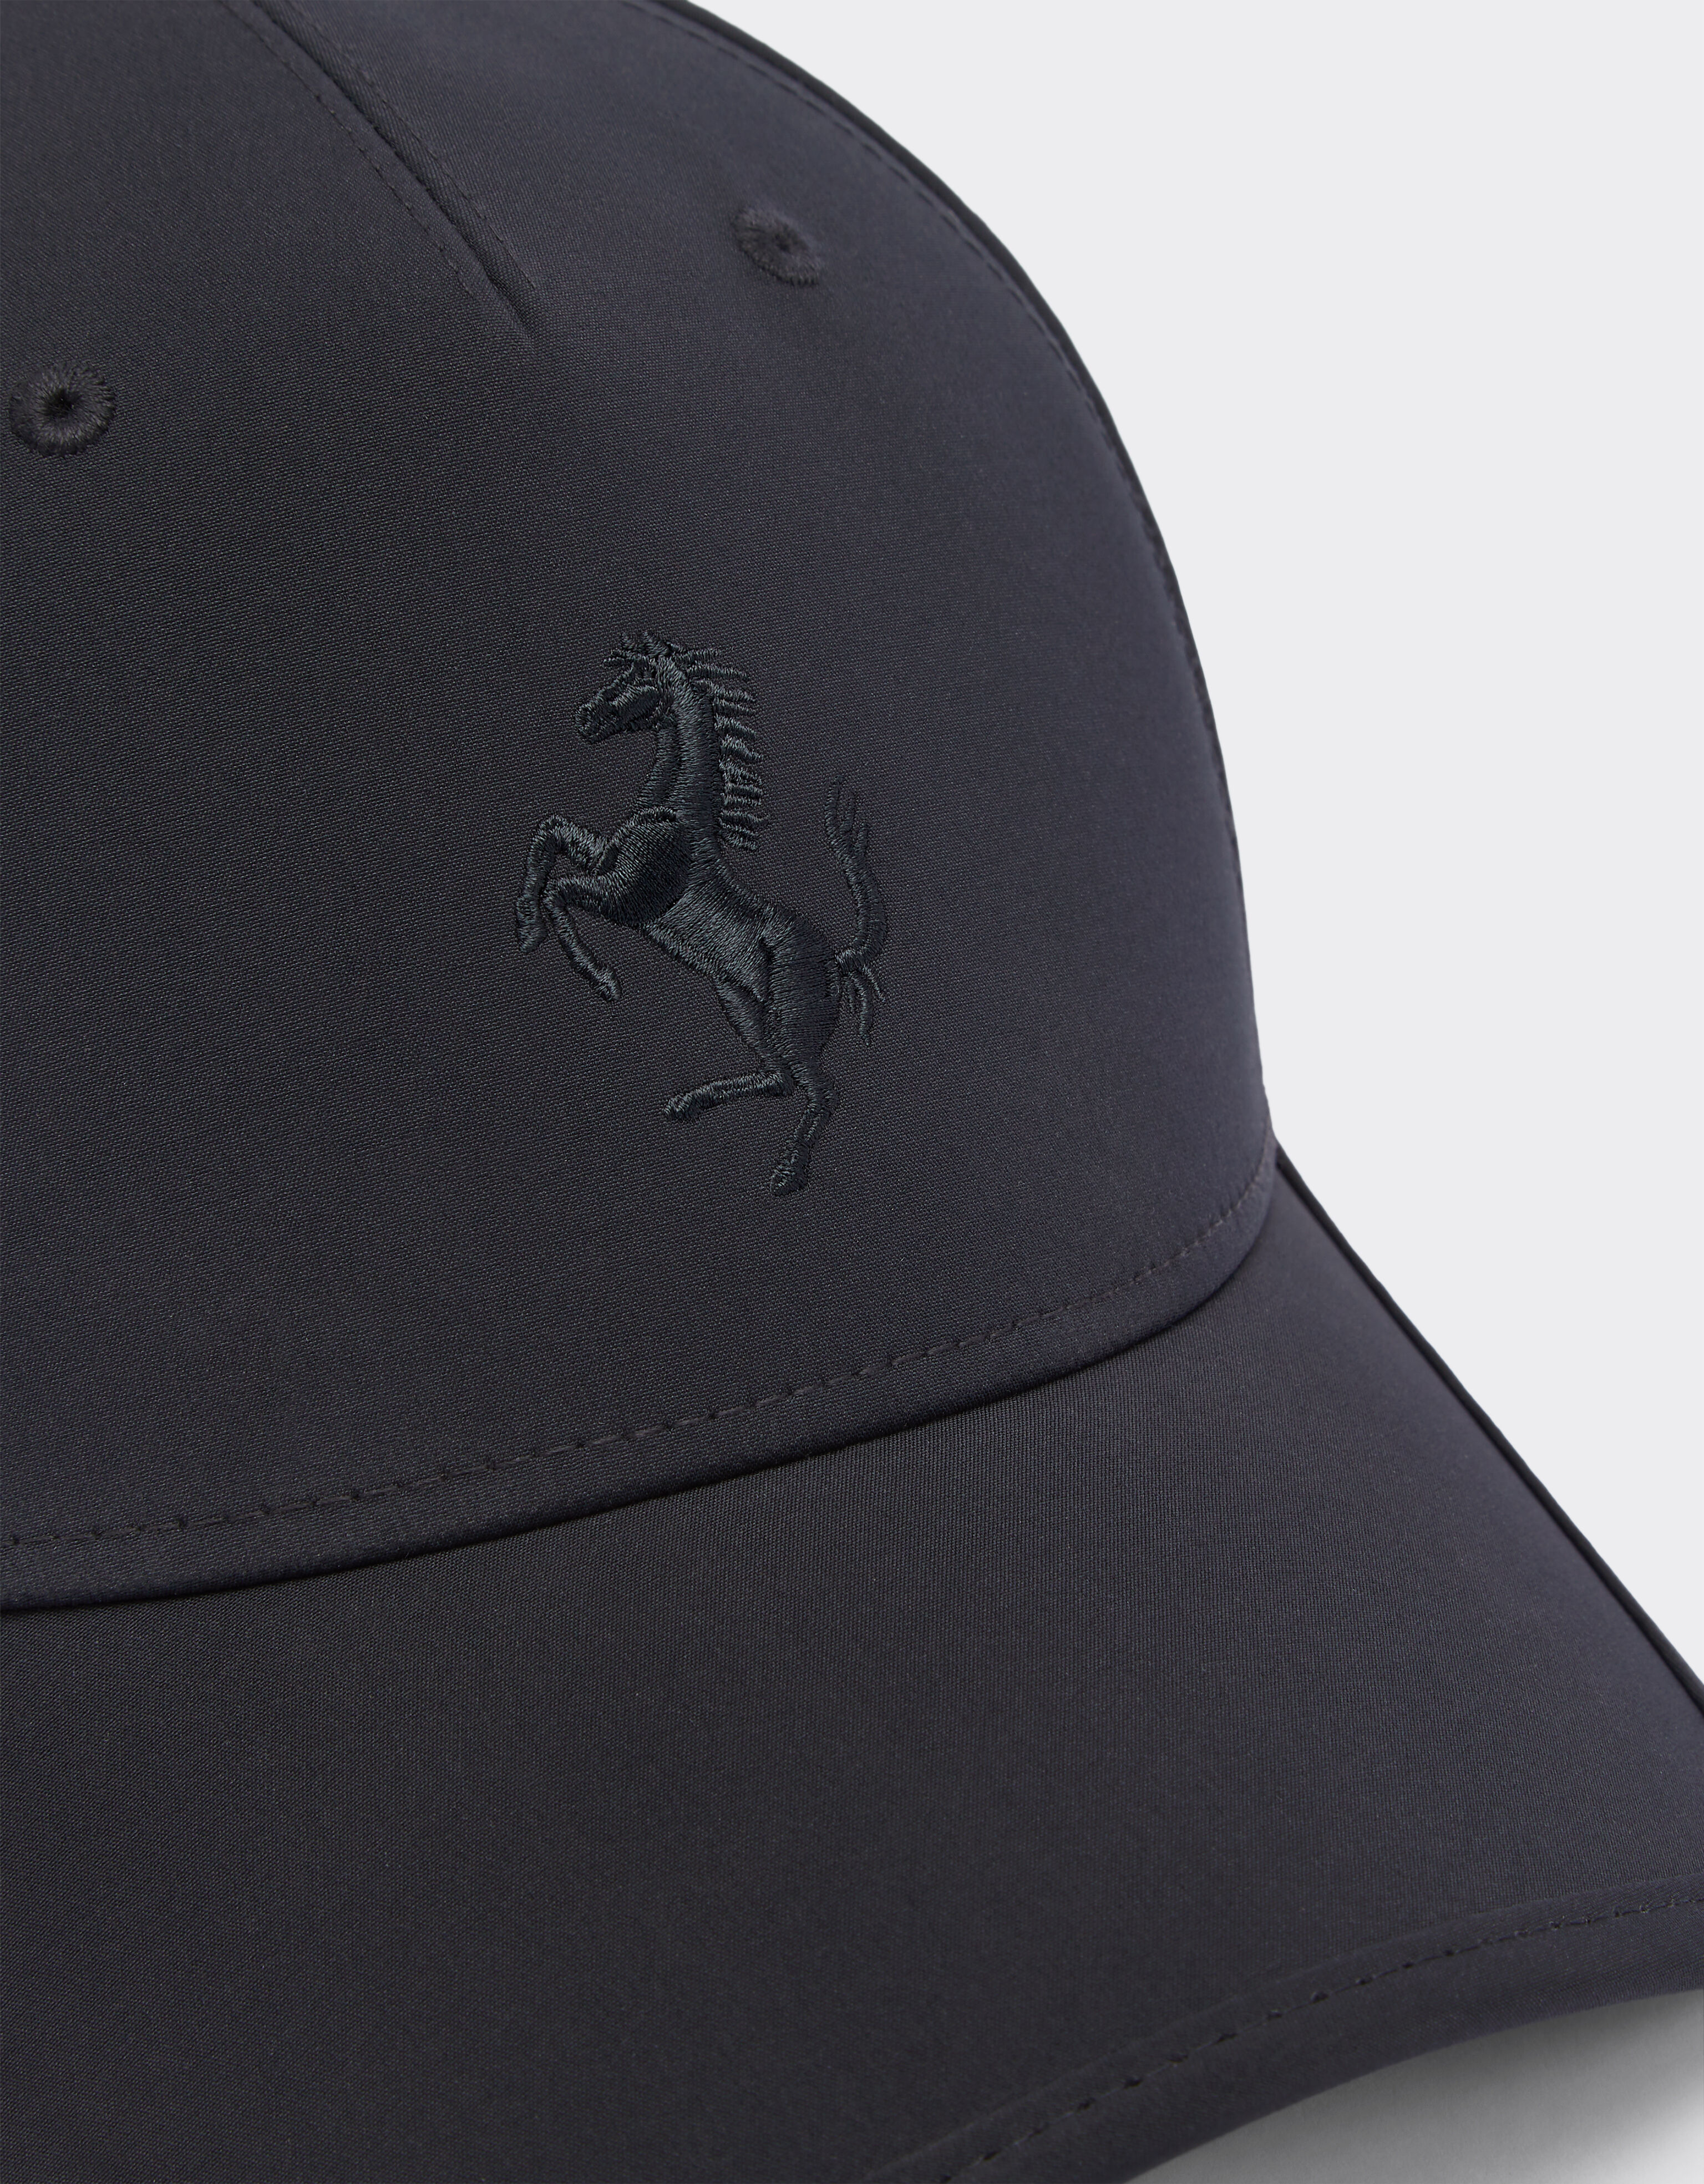 Ferrari Junior baseball hat with Prancing Horse detail Black 20274fK